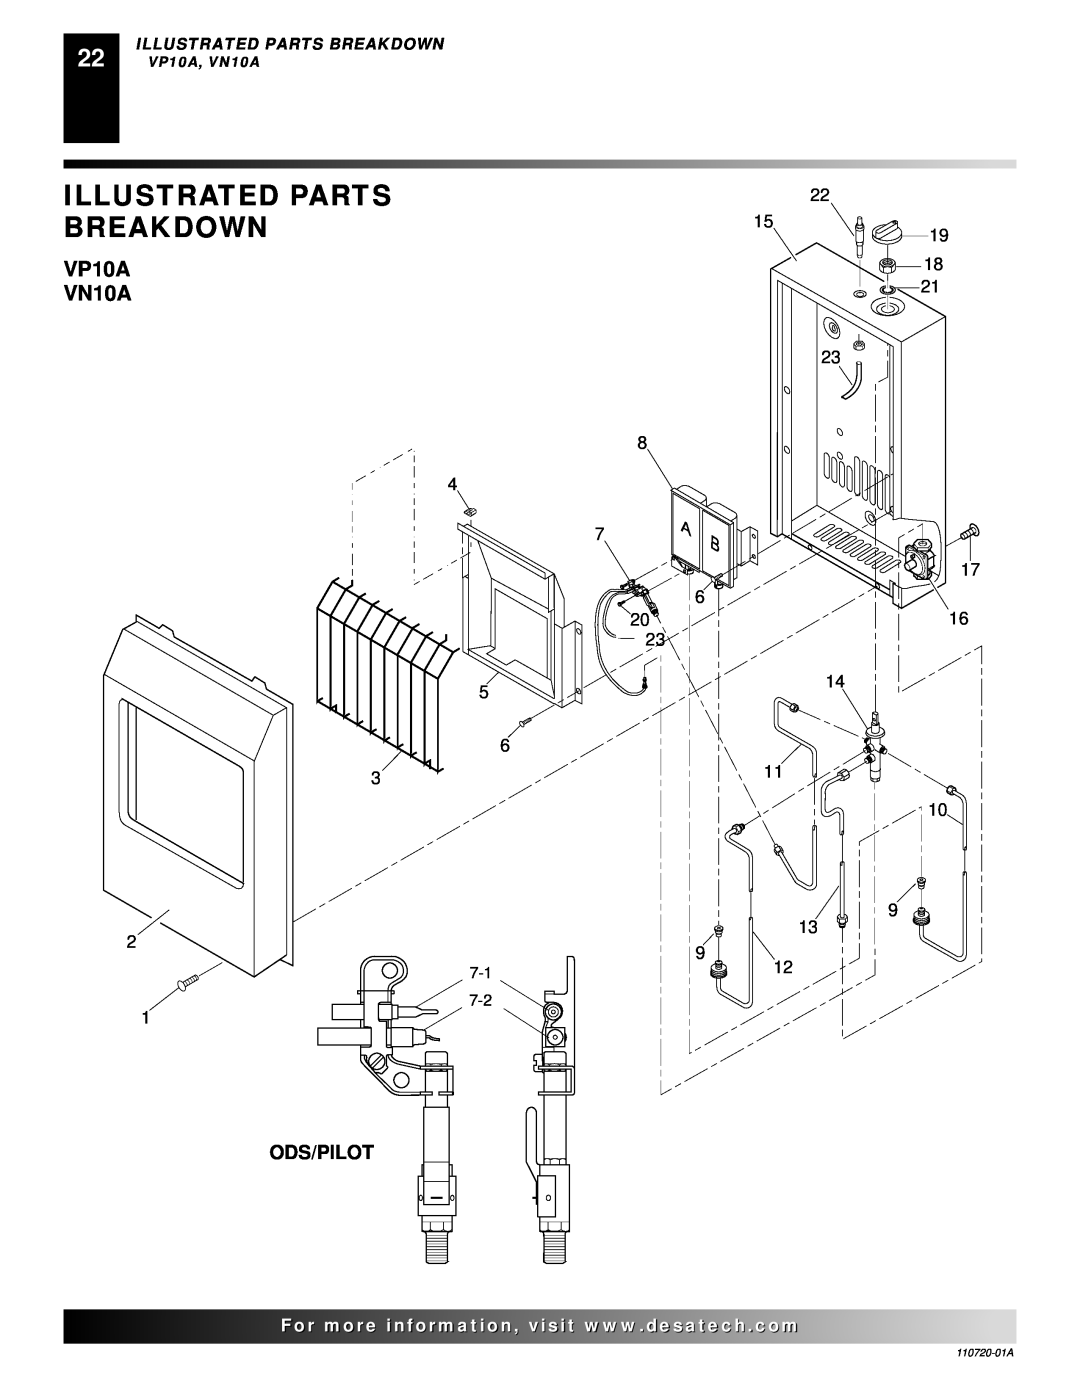 Desa VP1000BTA VN10A installation manual VP10A VN10A, Ods/Pilot, Illustrated Parts Breakdown 